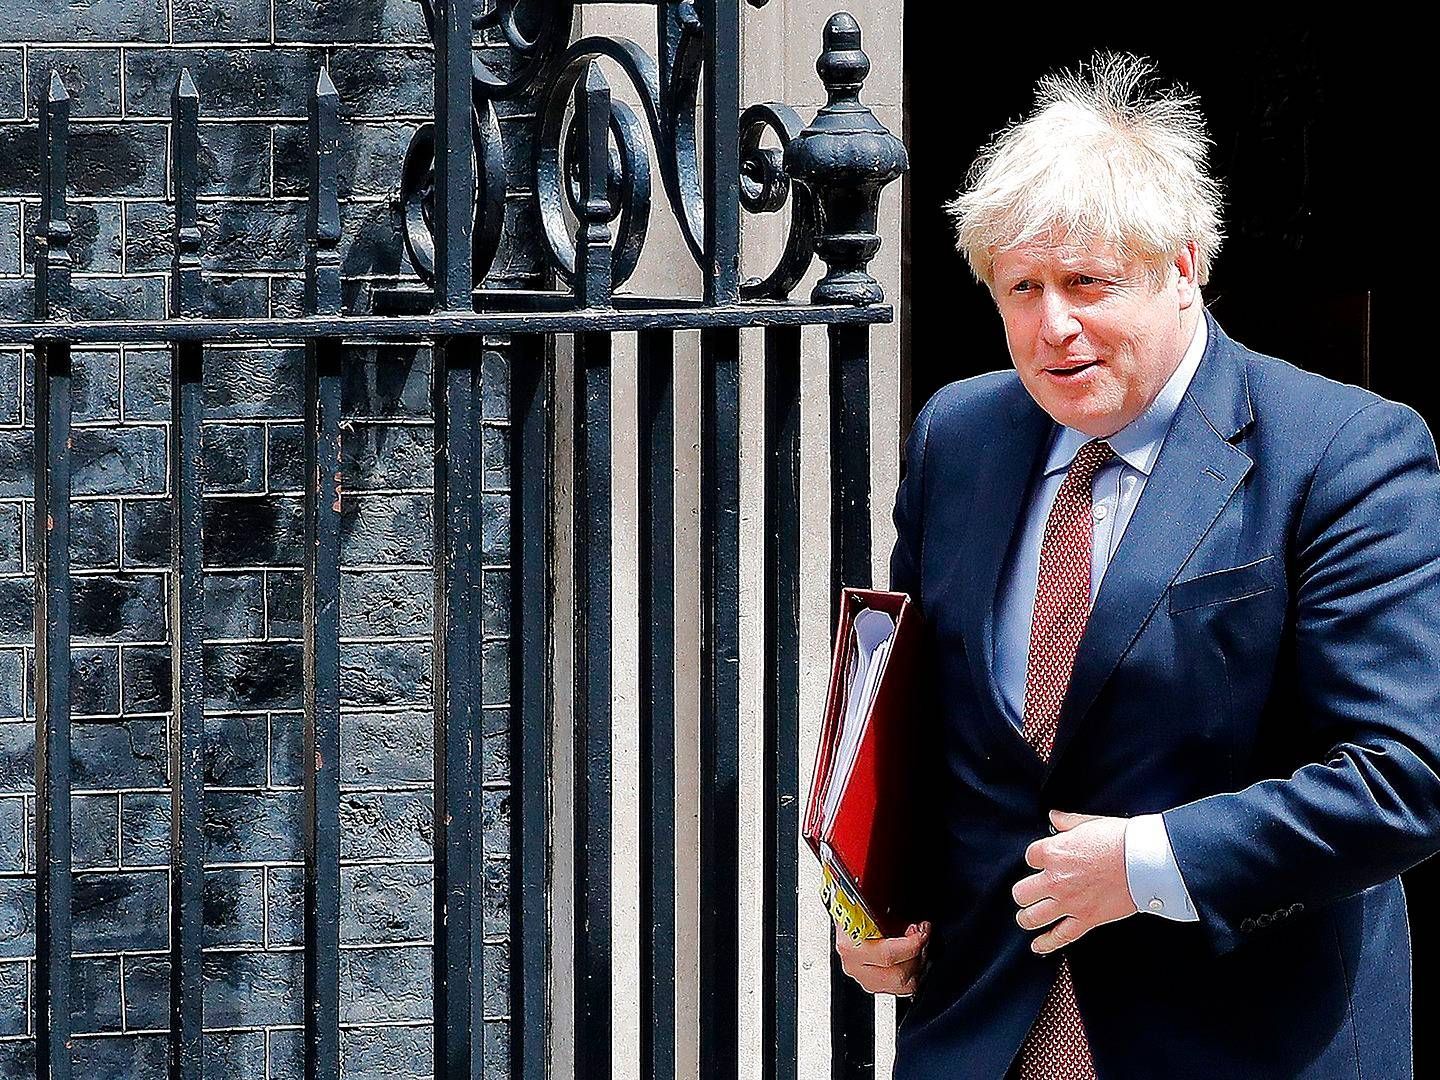 Premierminister Boris Johnsons regering overvejer at indføre en skat på onlinehandel, som bl.a. skal komme den trængte fysiske detailhandel til gode. | Foto: Tolga Akmen / AFP / Ritzau Scanpix